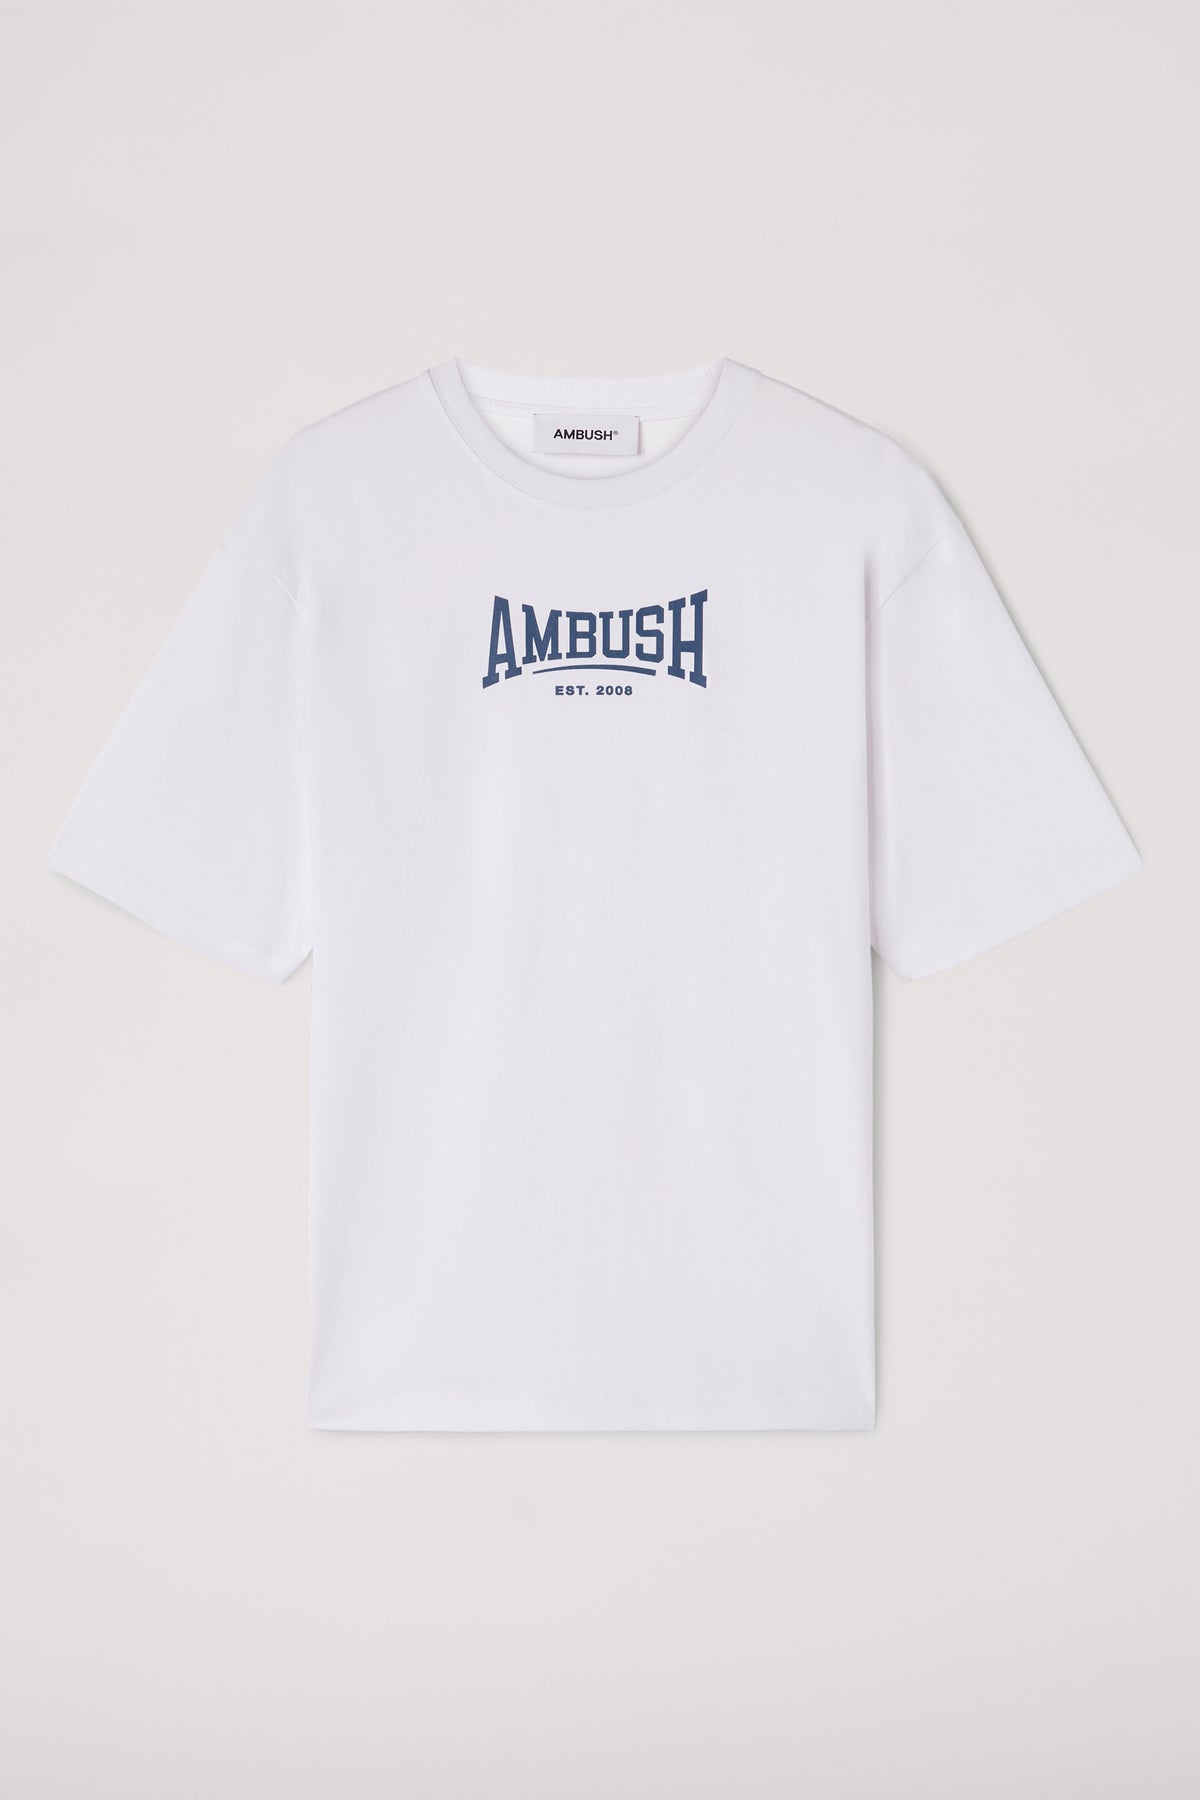 AMBUSH Graphic T-Shirt - White